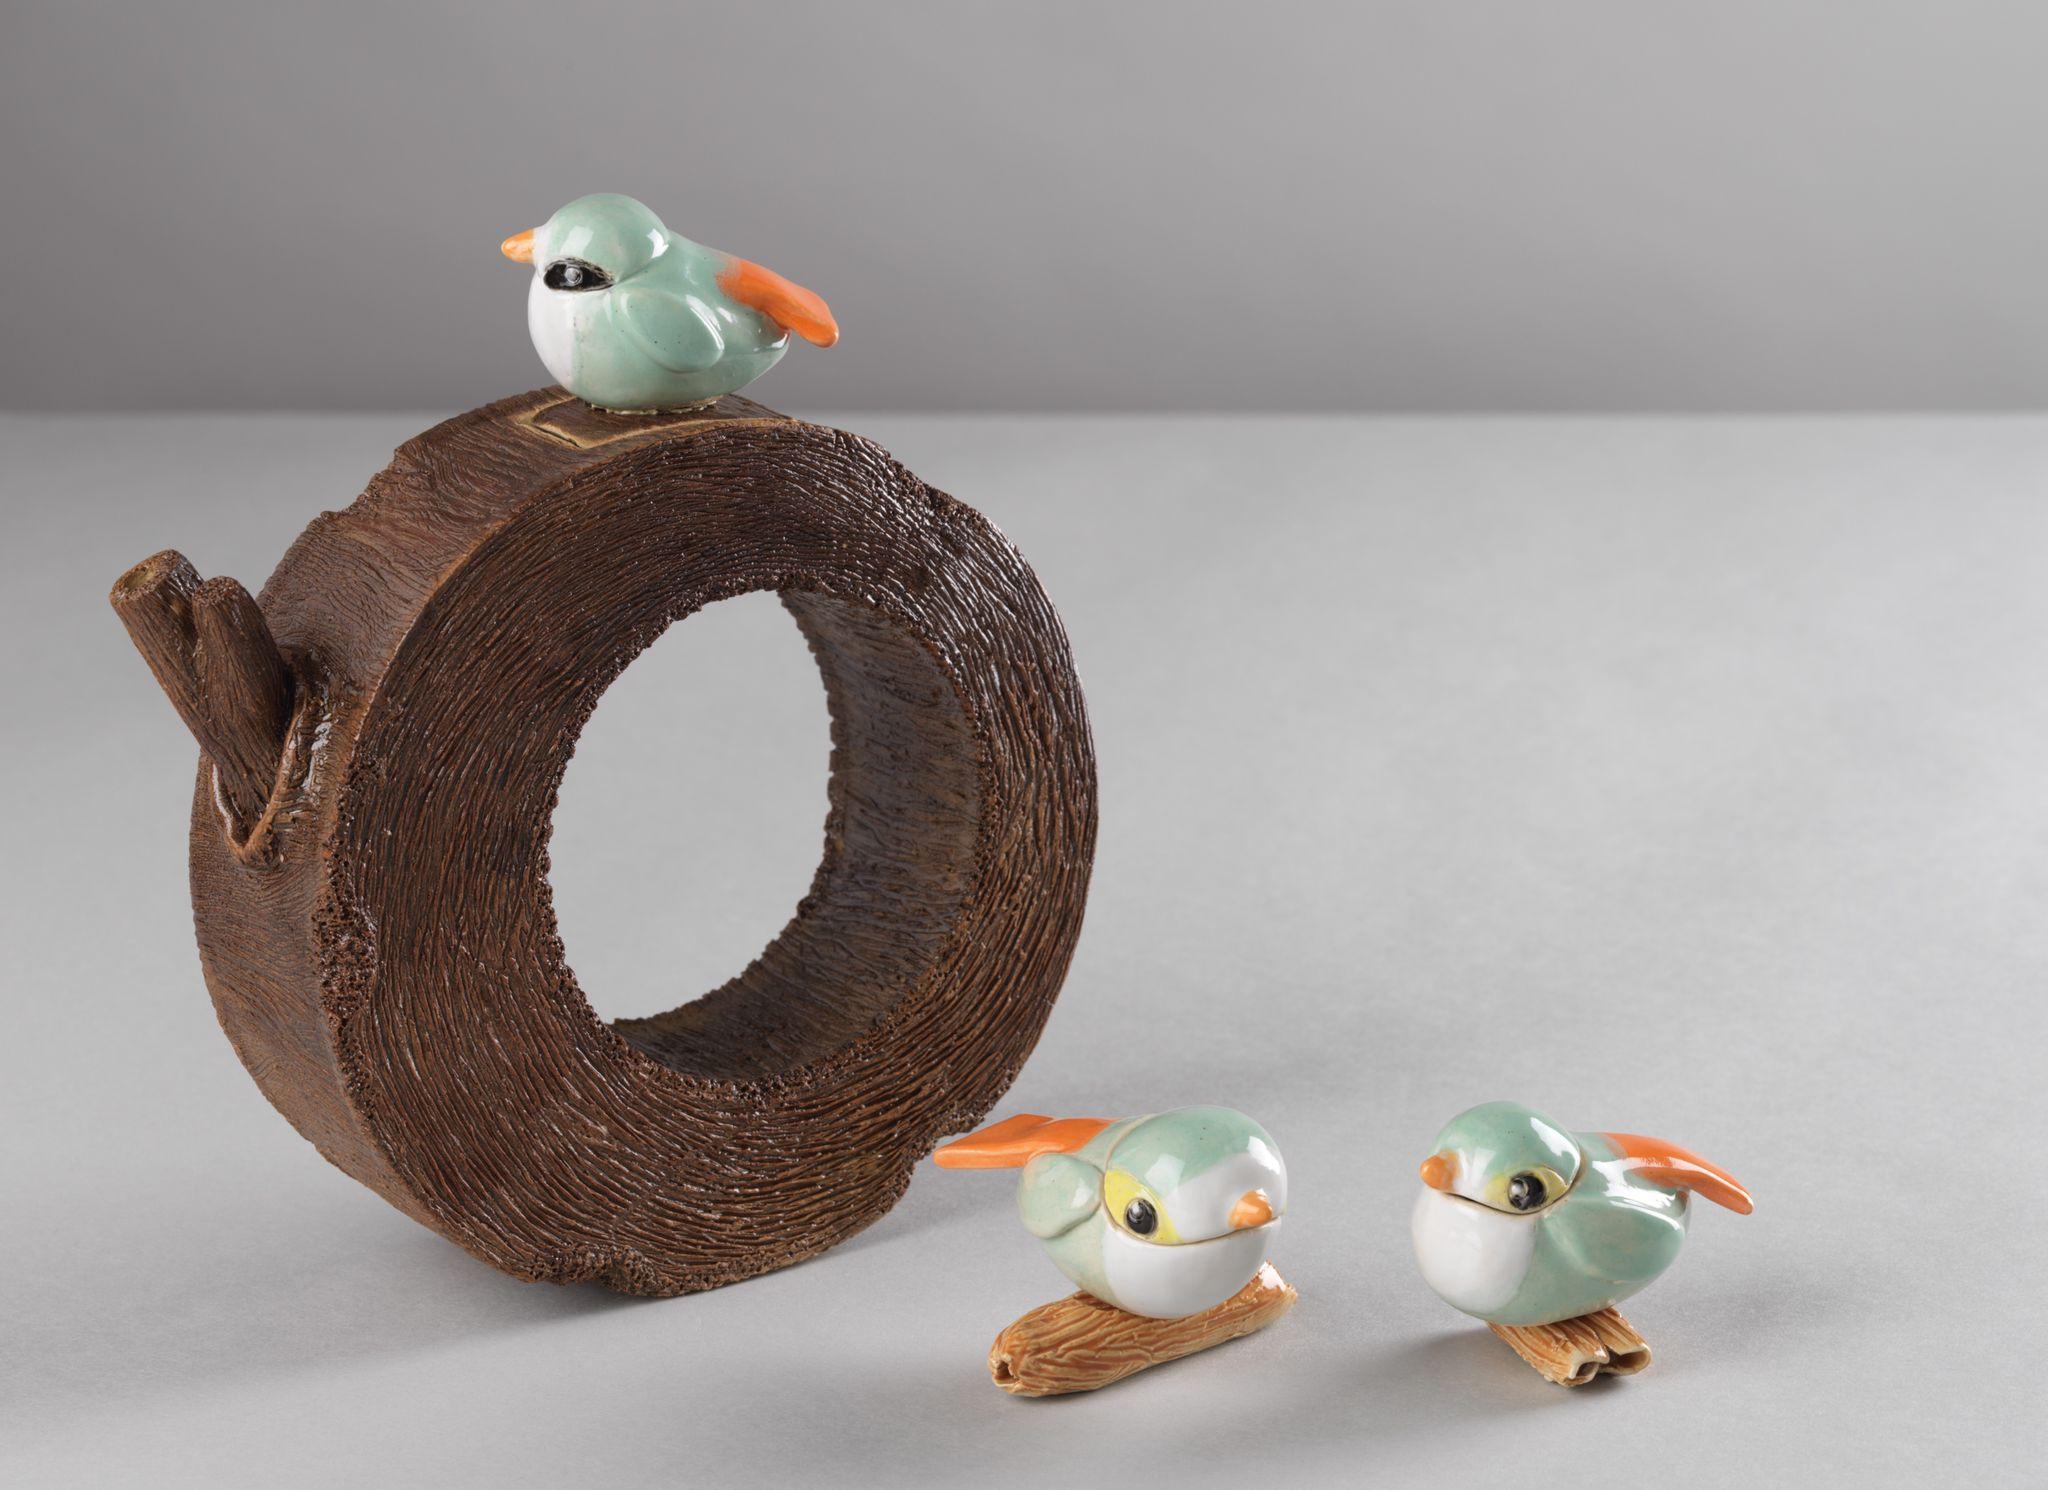 茶具文物館現正舉行「陶瓷茶具創作展覽2021」。圖示學生組冠軍得主葉浩年的作品《休閒的小鳥》。